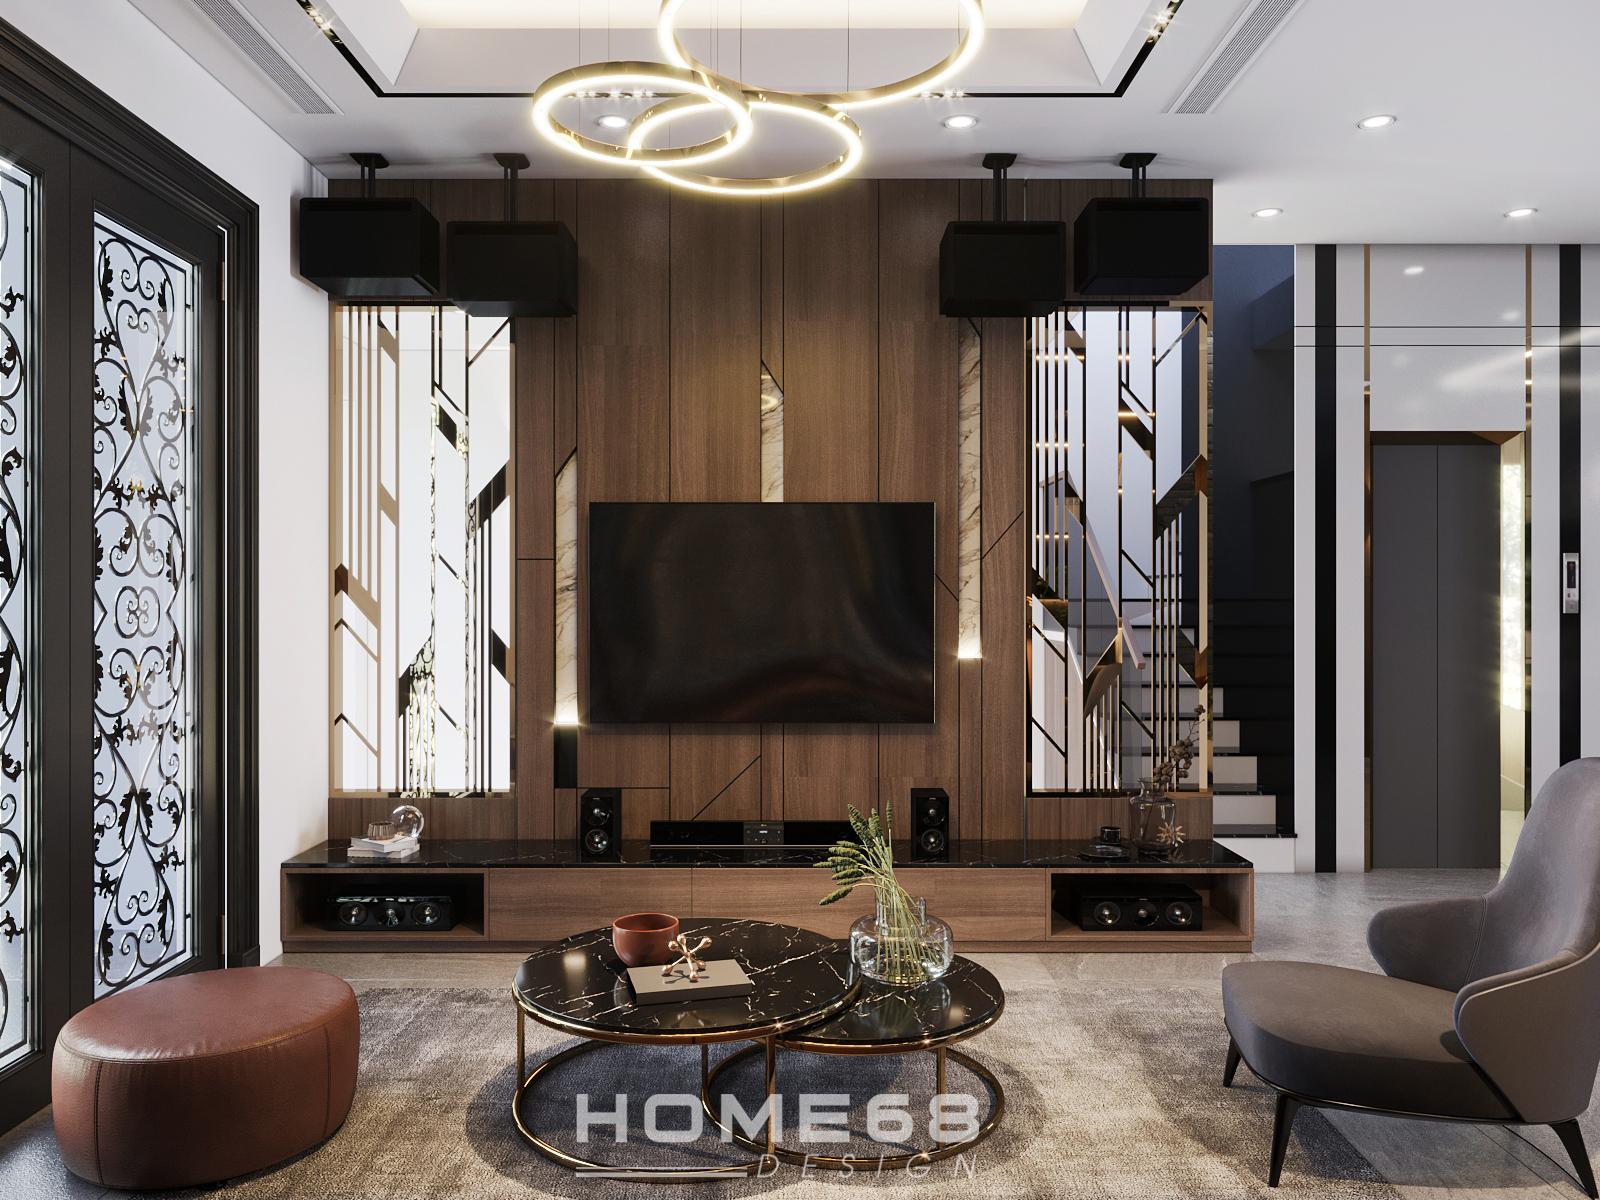 Thiết kế nội thất phòng khách Modern Style độc đáo - HOME68